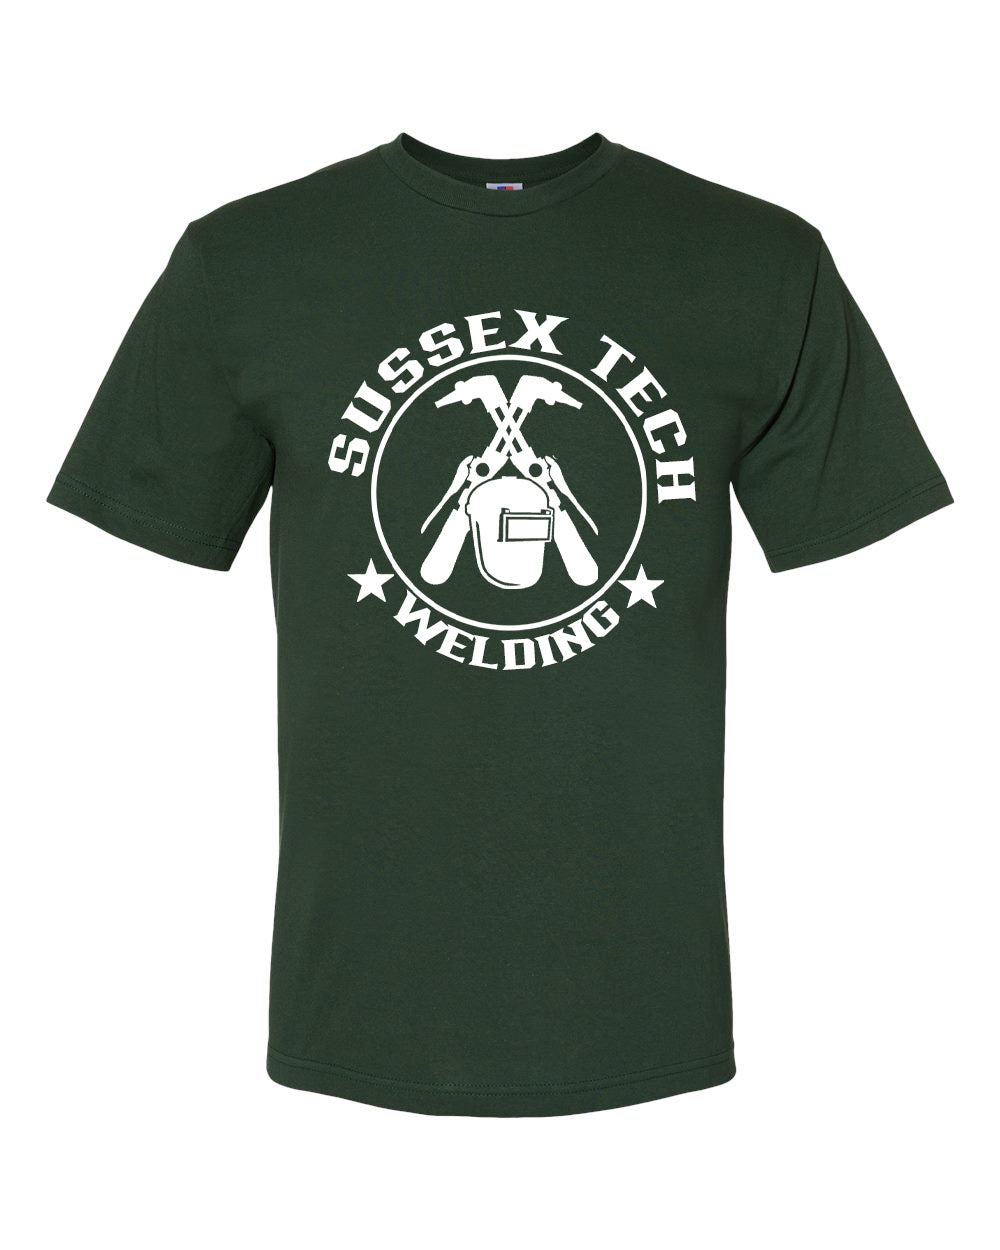 Sussex Tech Welding Design 6 T-Shirt